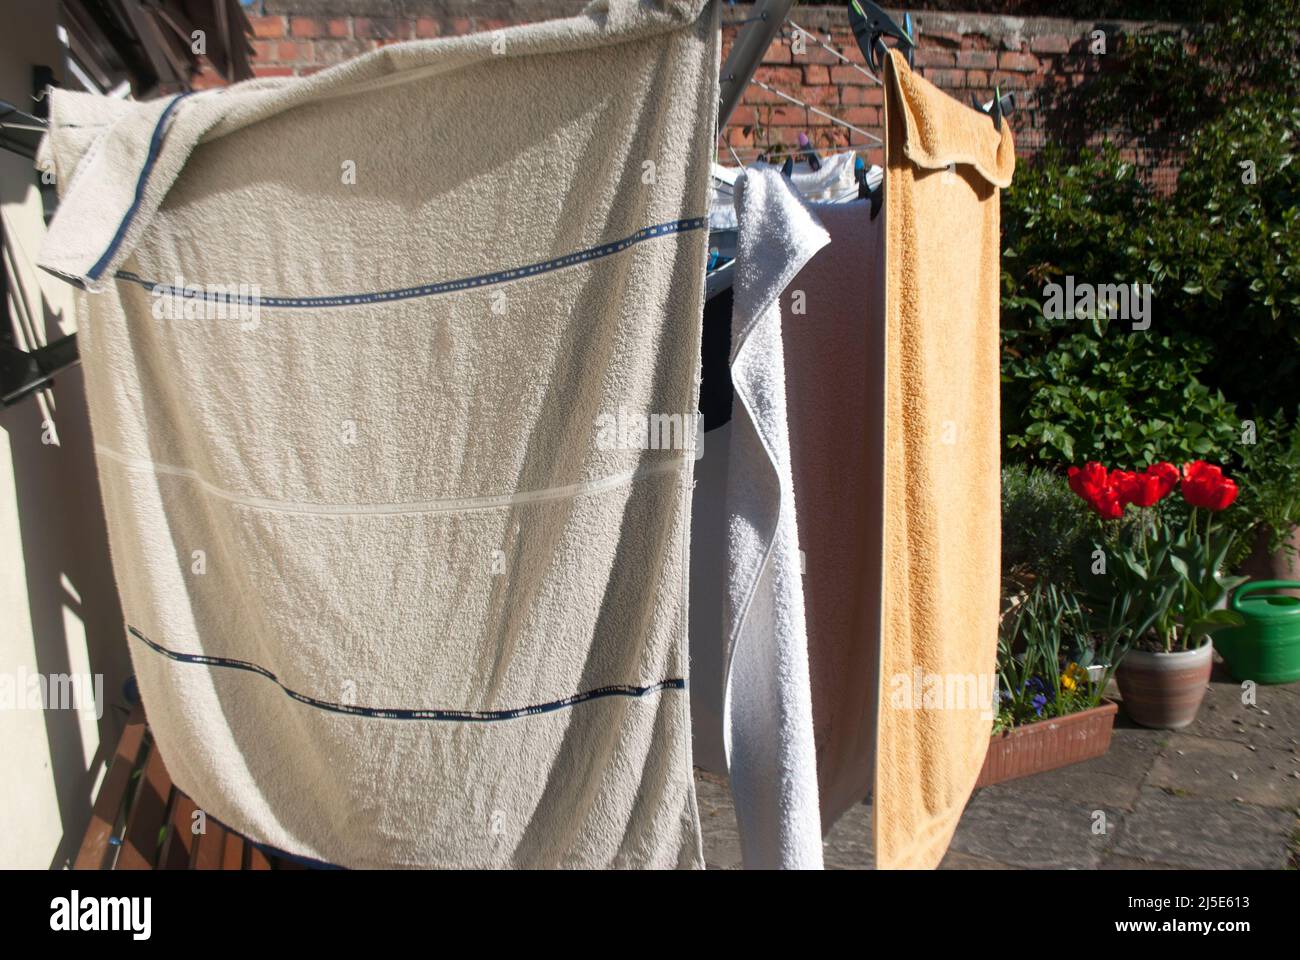 Primer plano de toallas / lavado colgando en una línea de paños montados en la pared en el jardín en Ruskington, Sleaford, Inglaterra, Reino Unido Foto de stock